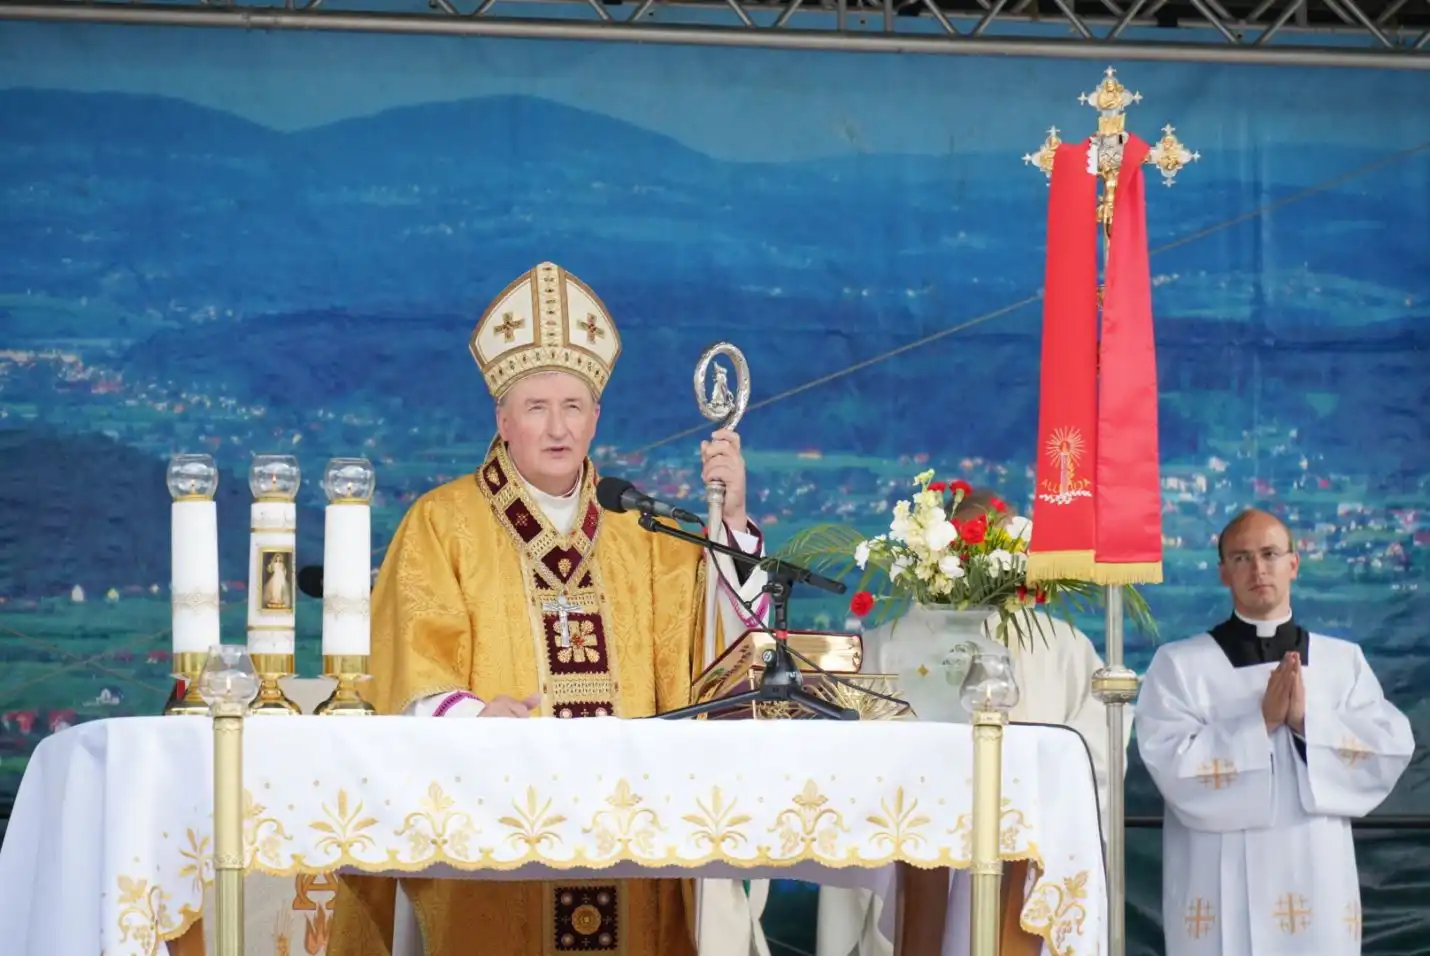 Uroczysta Msza święta regionalna w oprawie góralsko-lachowskiej w Jazowsku